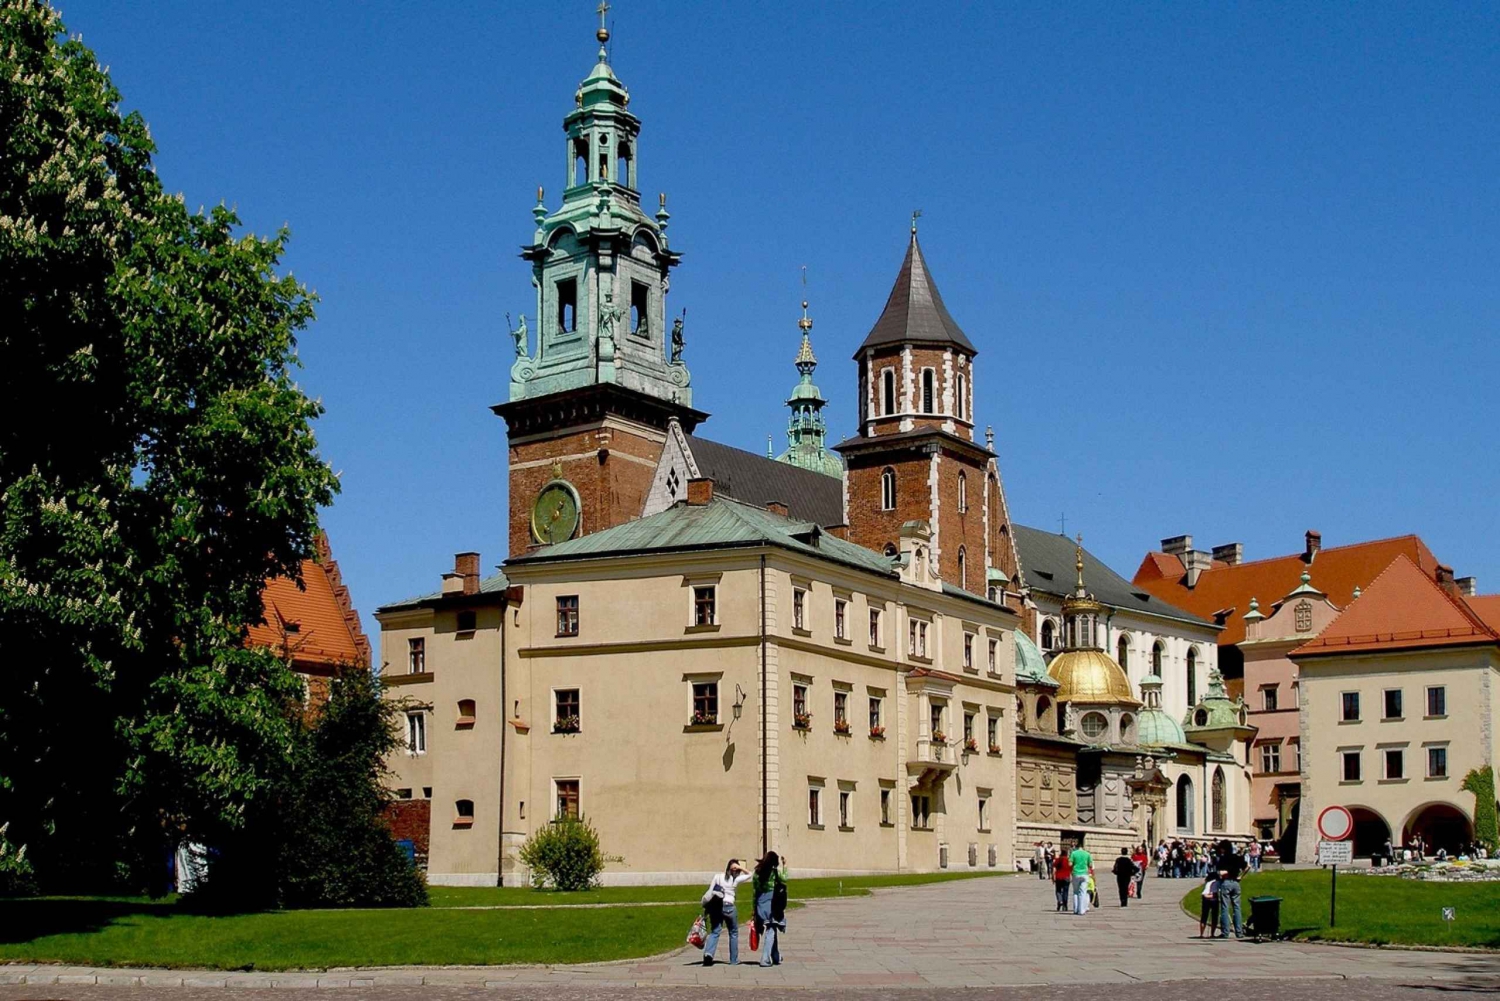 Krakow: Old Town, Wawel, and Wieliczka Salt Mine with Lunch